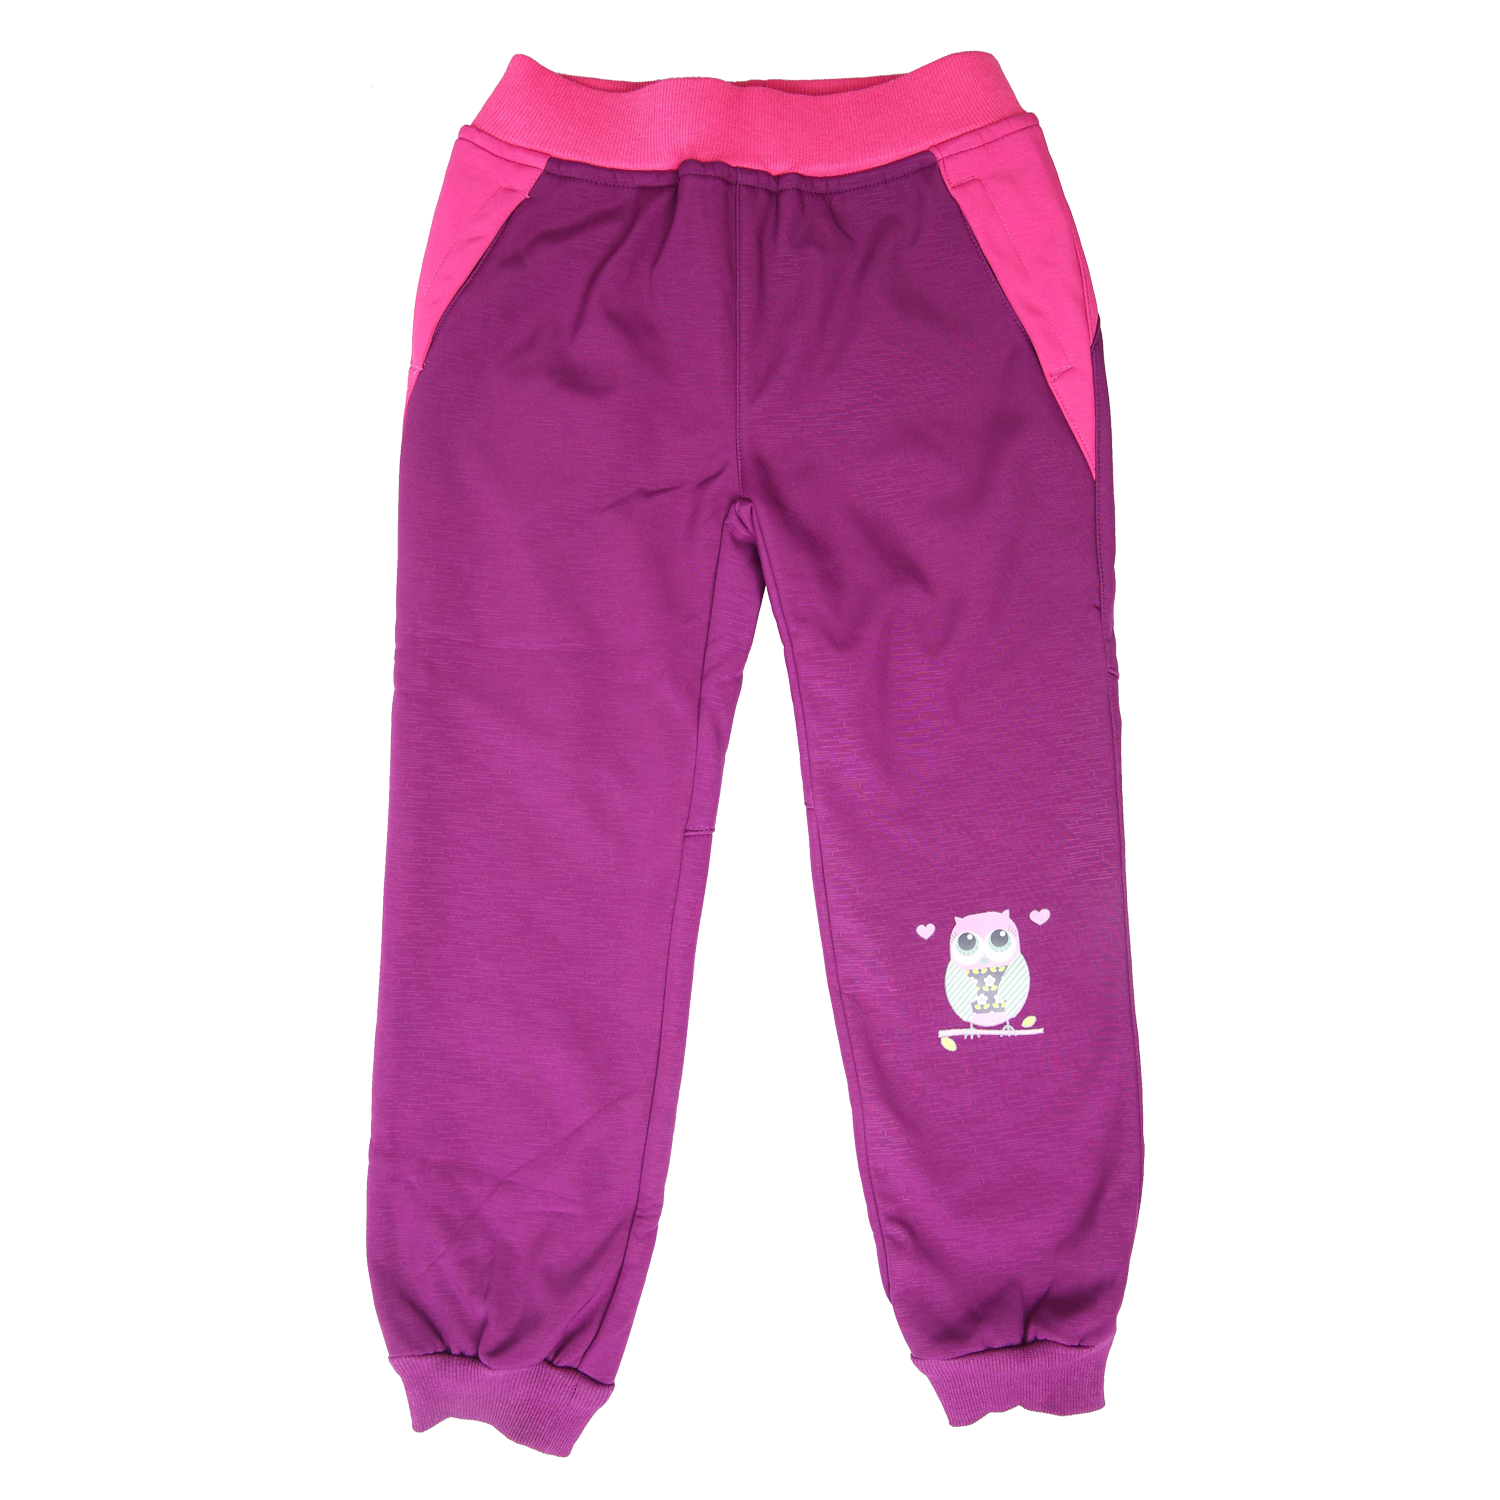 Dívčí softshellové kalhoty, zateplené - Wolf B2191, fialovorůžová Barva: Fialovorůžová, Velikost: 86